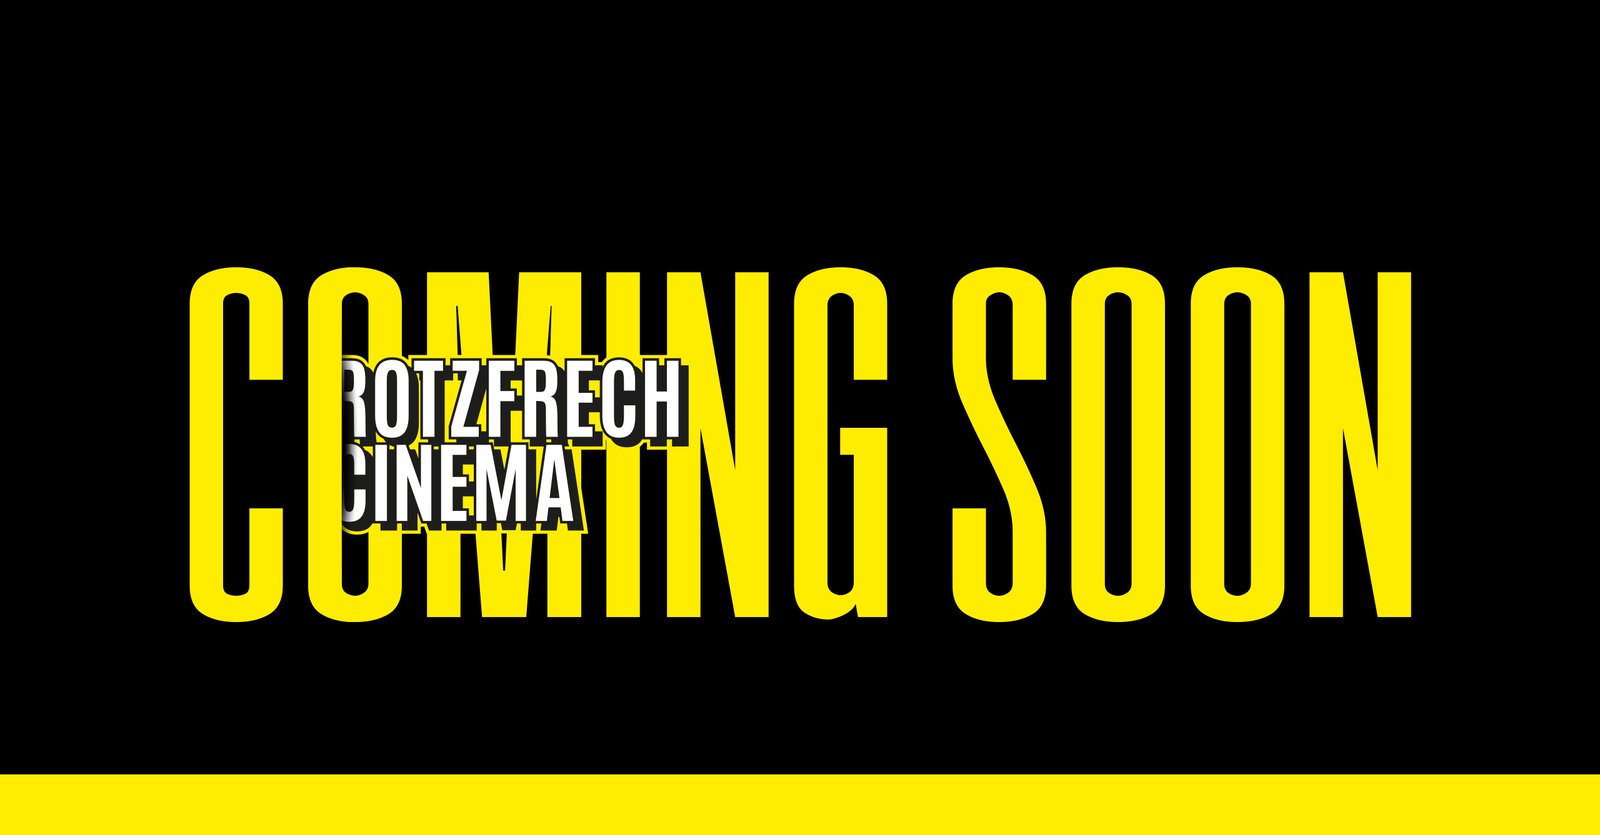 Rotzfrech Cinema - Coming Soon